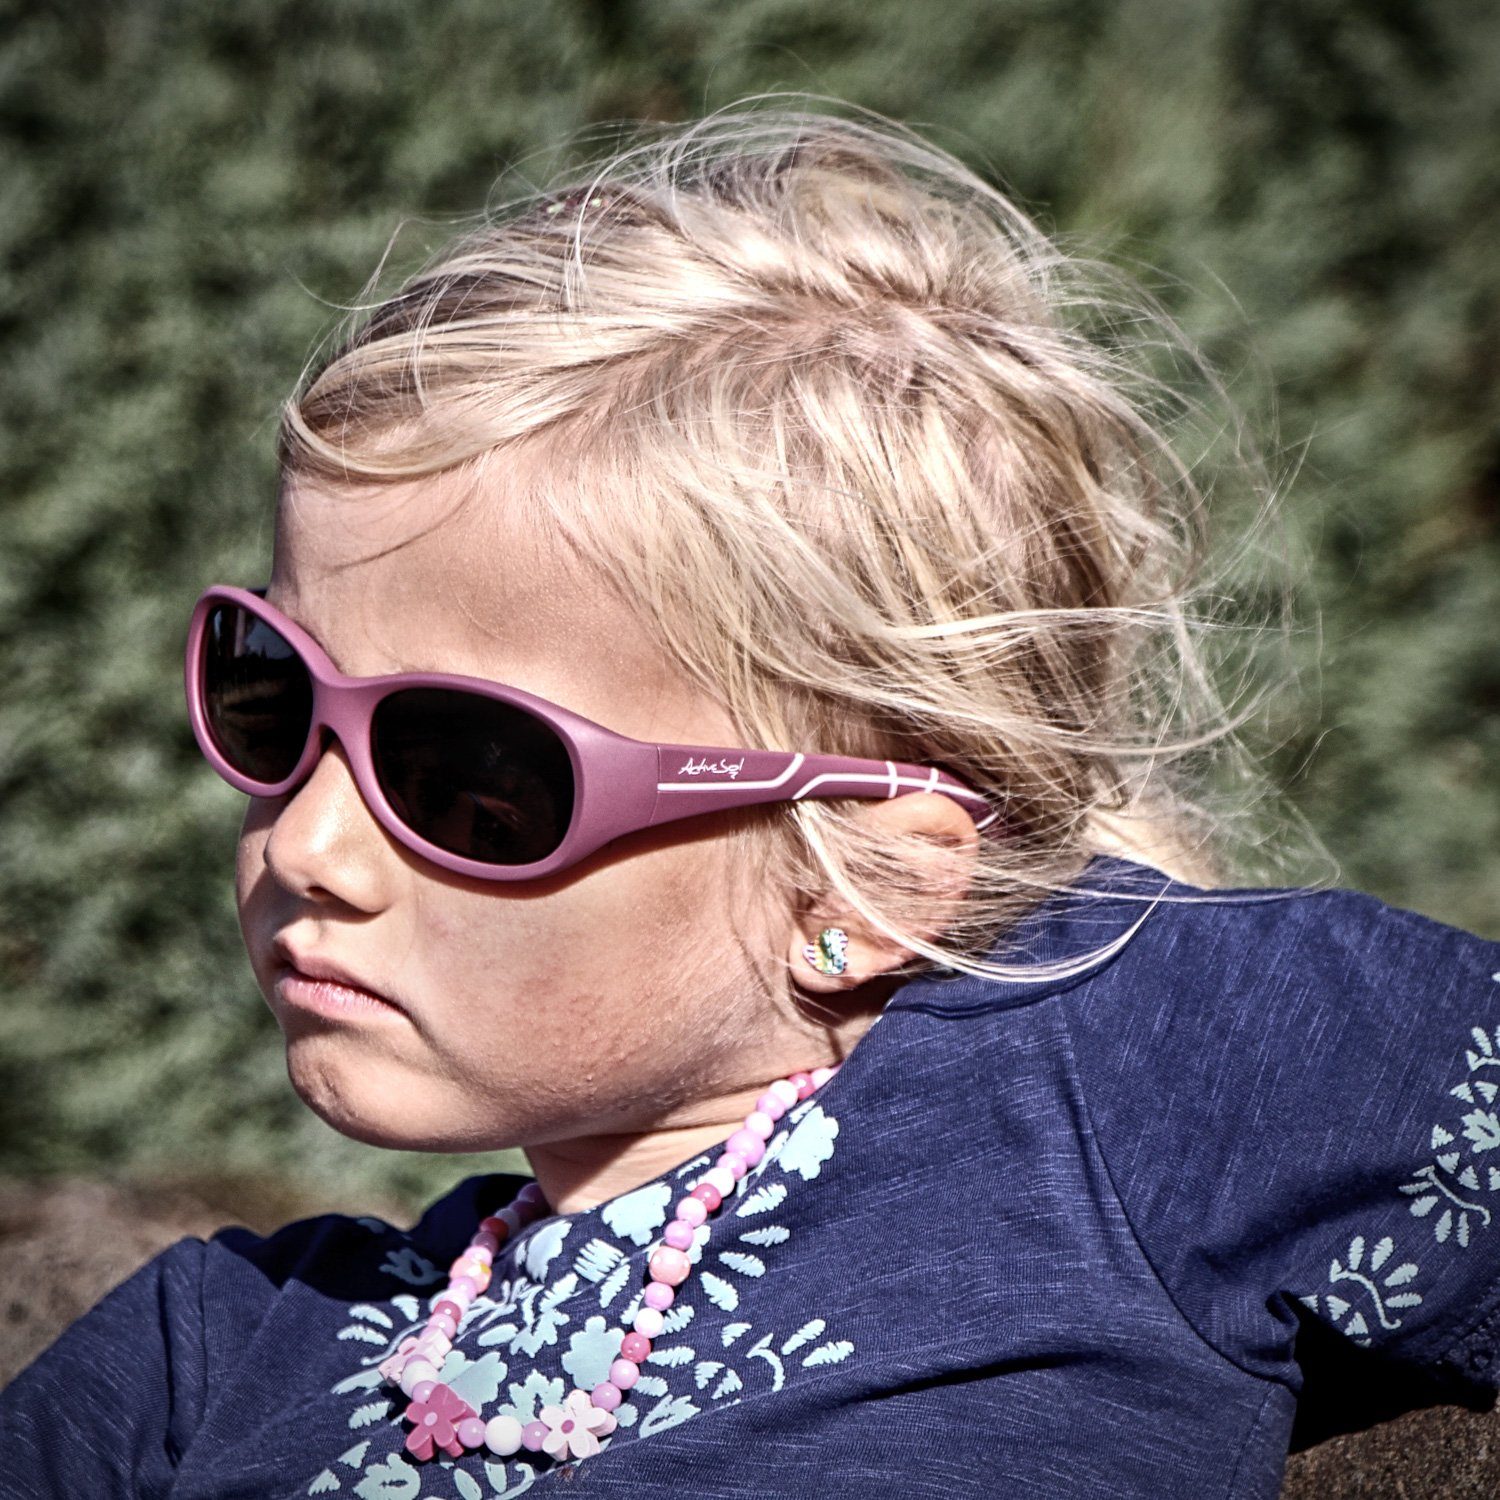 ActiveSol SUNGLASSES Sonnenbrille für Kinder, Flieder BPA-frei Jahre, 5-10 - Beere